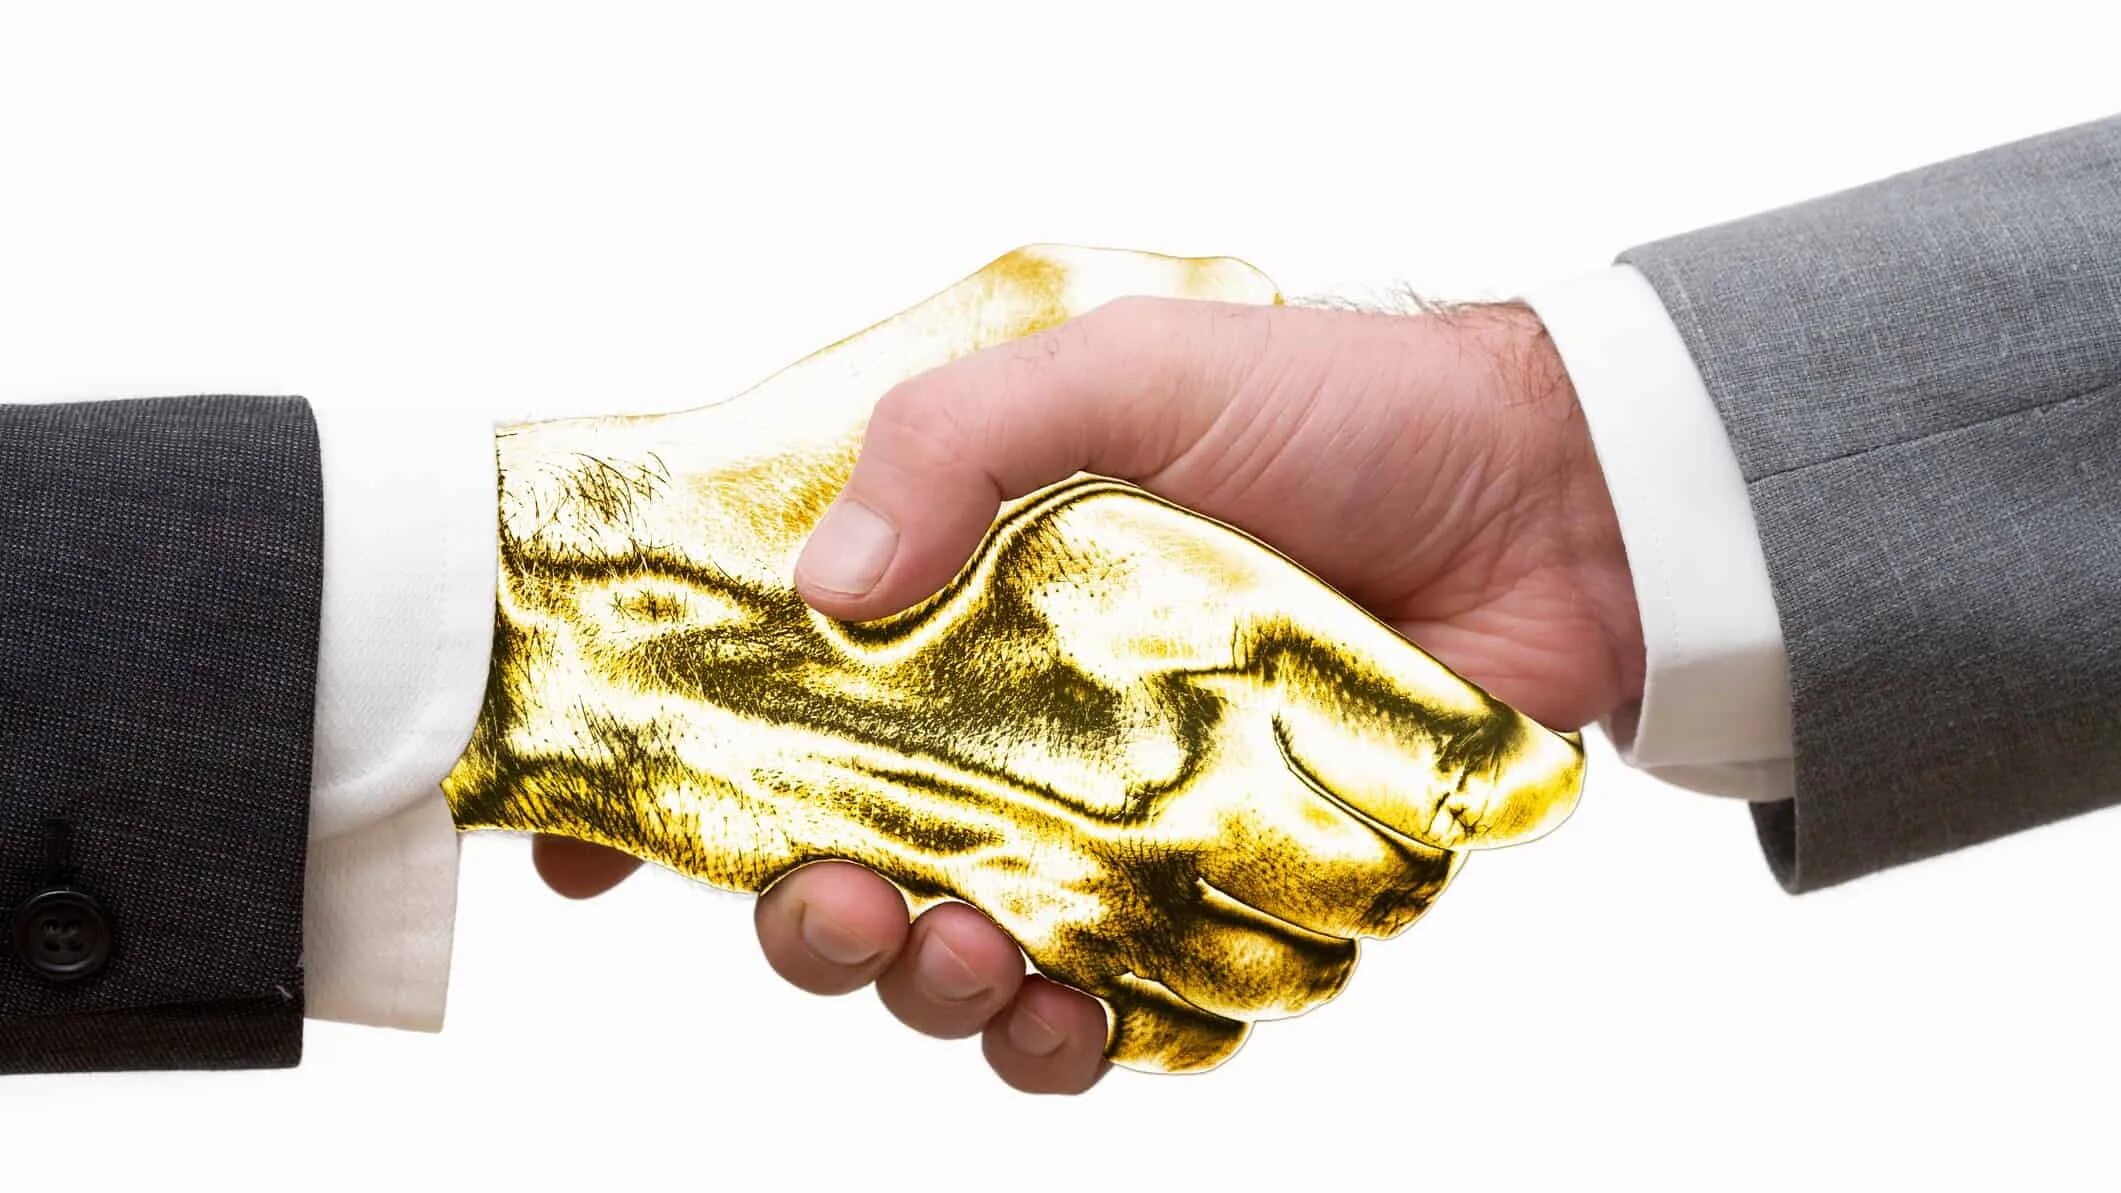 Golden handshake идиома. Золотое рукопожатие. Золотые руки. Золото в руках. По колено руки в золоте